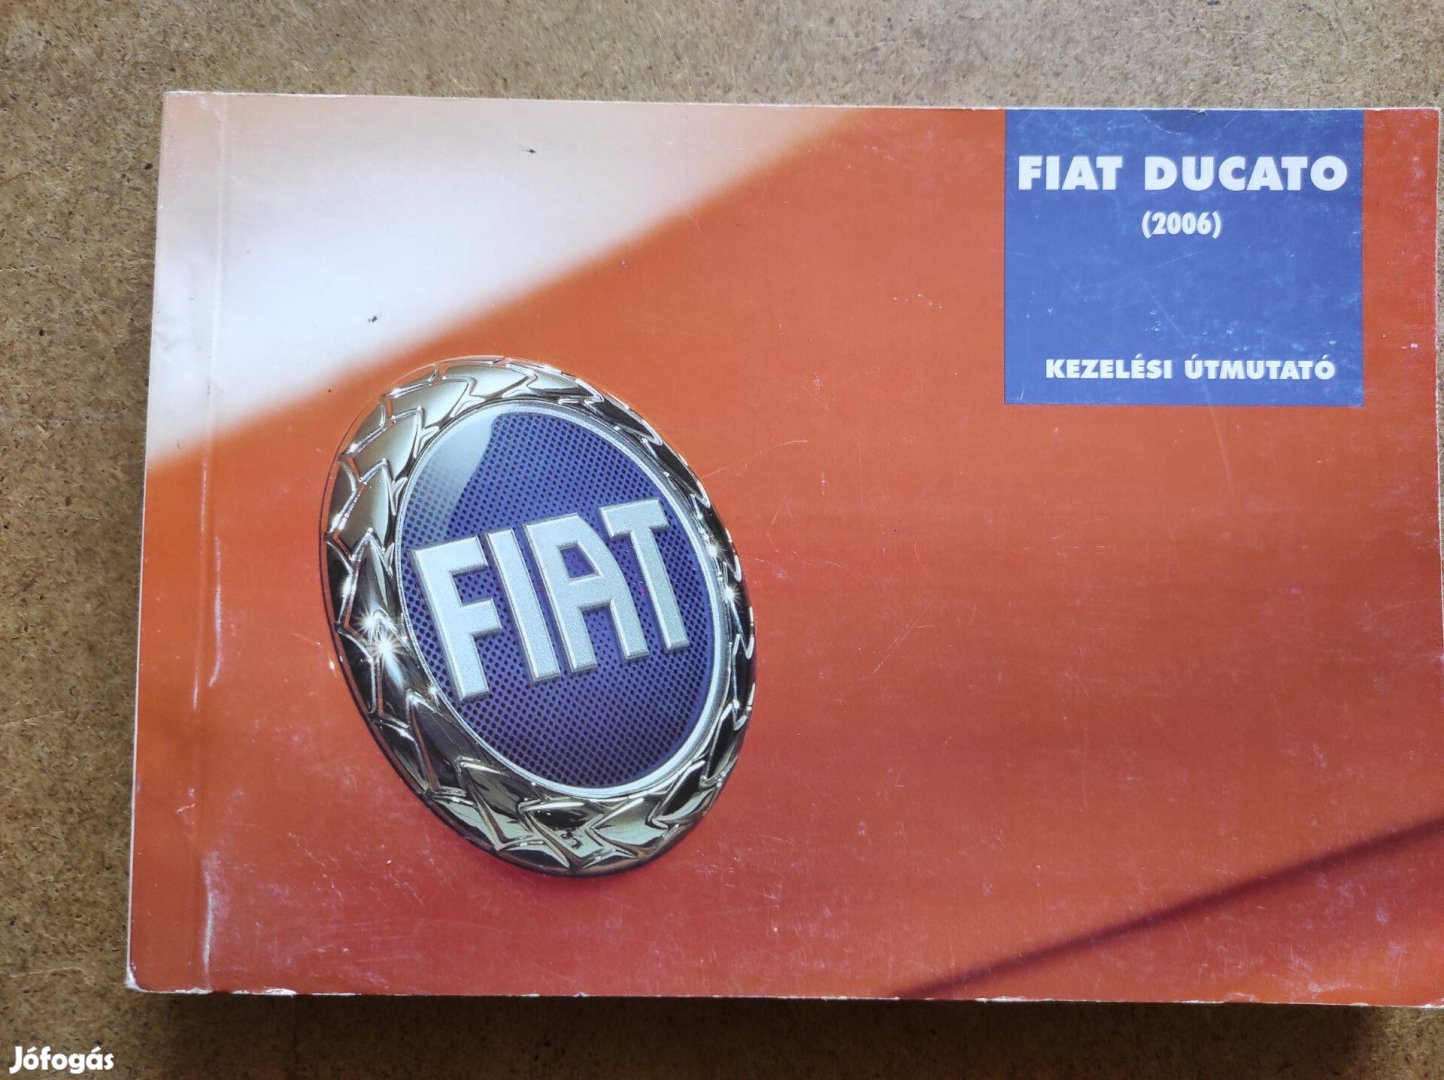 Fiat Ducato kezelési útmutató.2006-